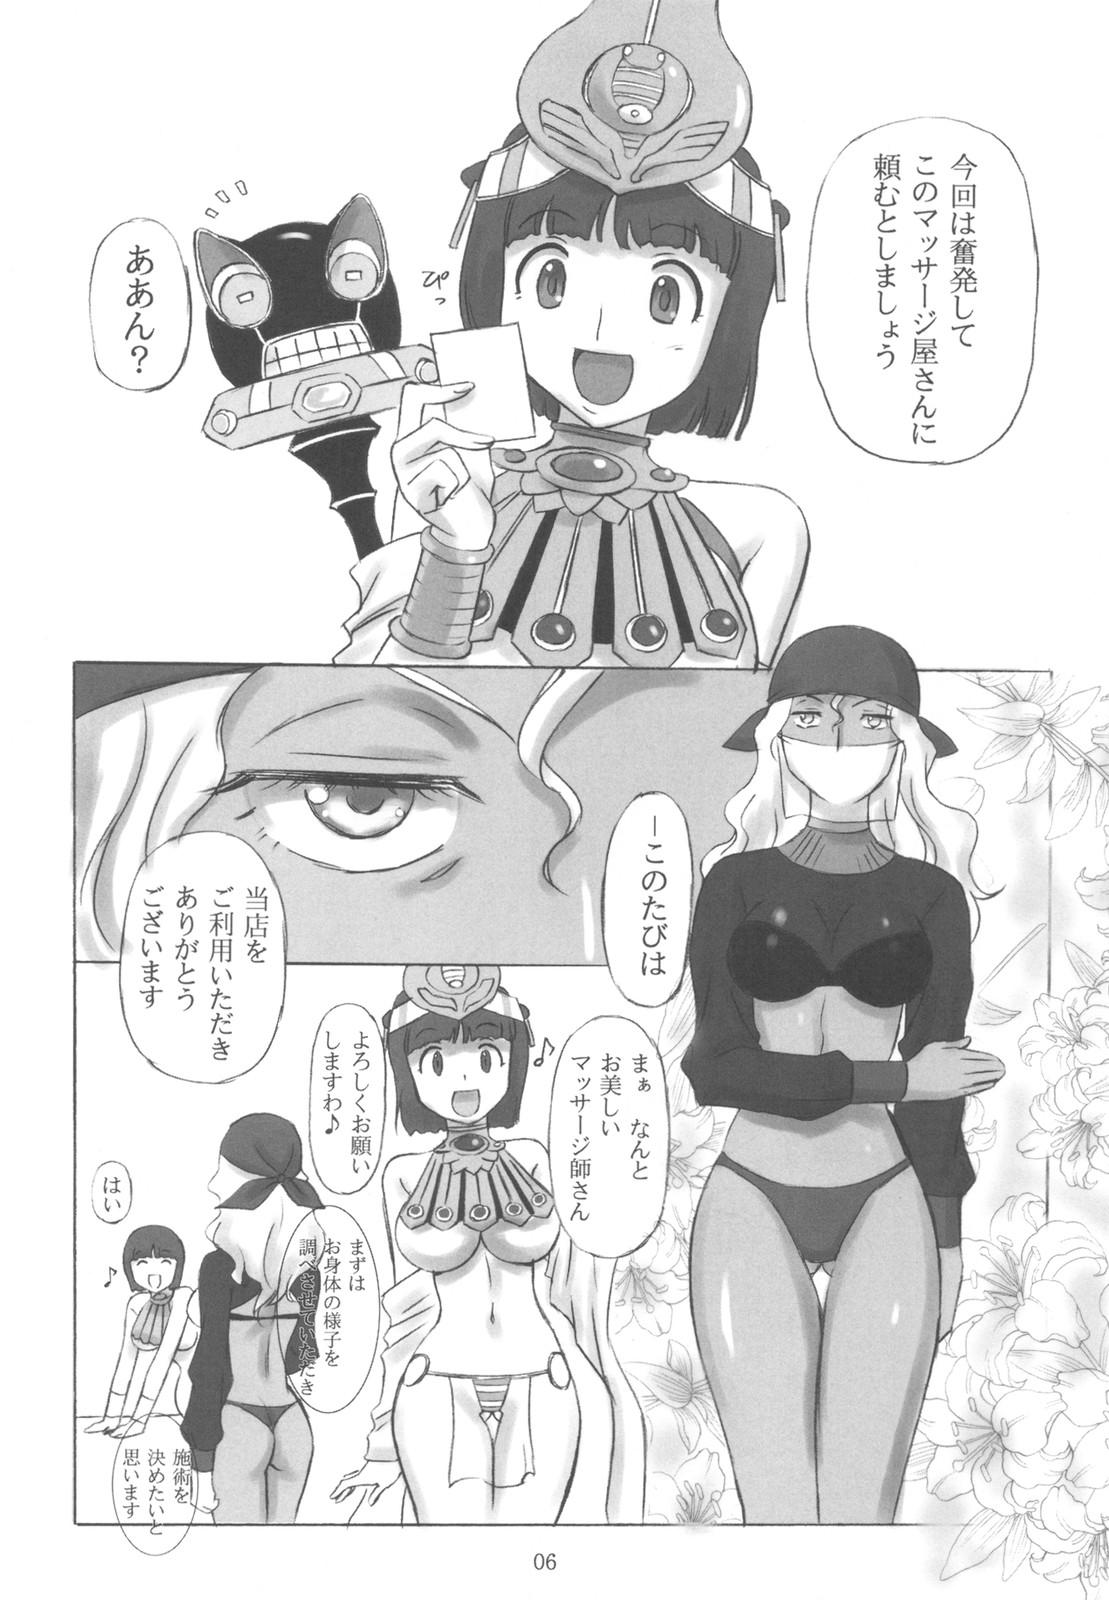 Butts Kodai Oujo no Kannou Ryouhou Taikenki - Queens blade Ex Girlfriend - Page 6